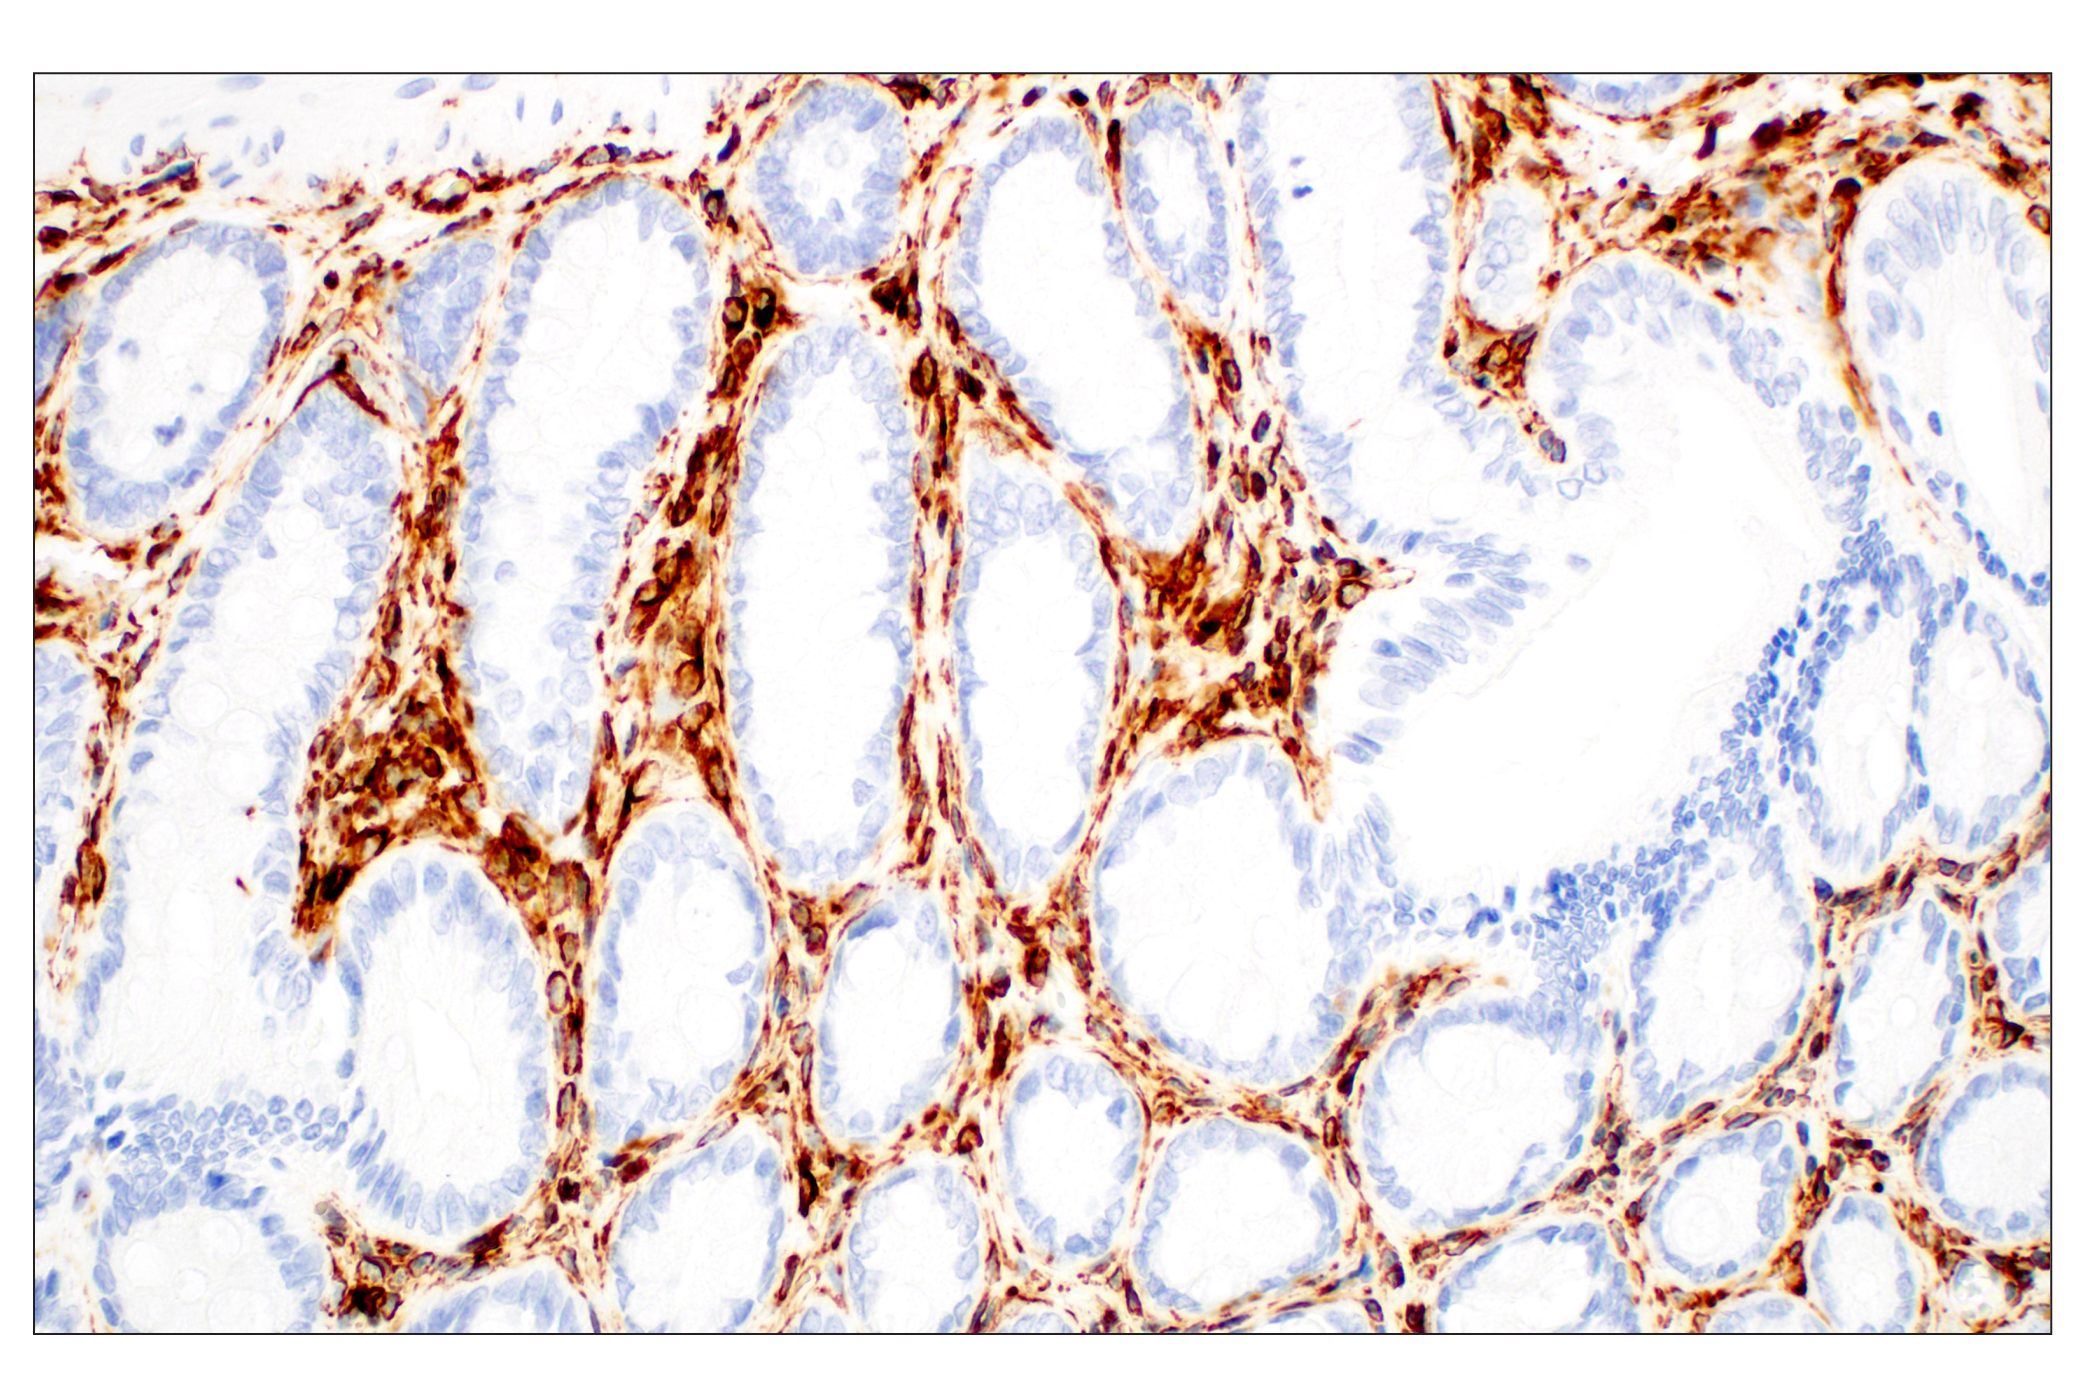  Image 27: Cell Fractionation Antibody Sampler Kit